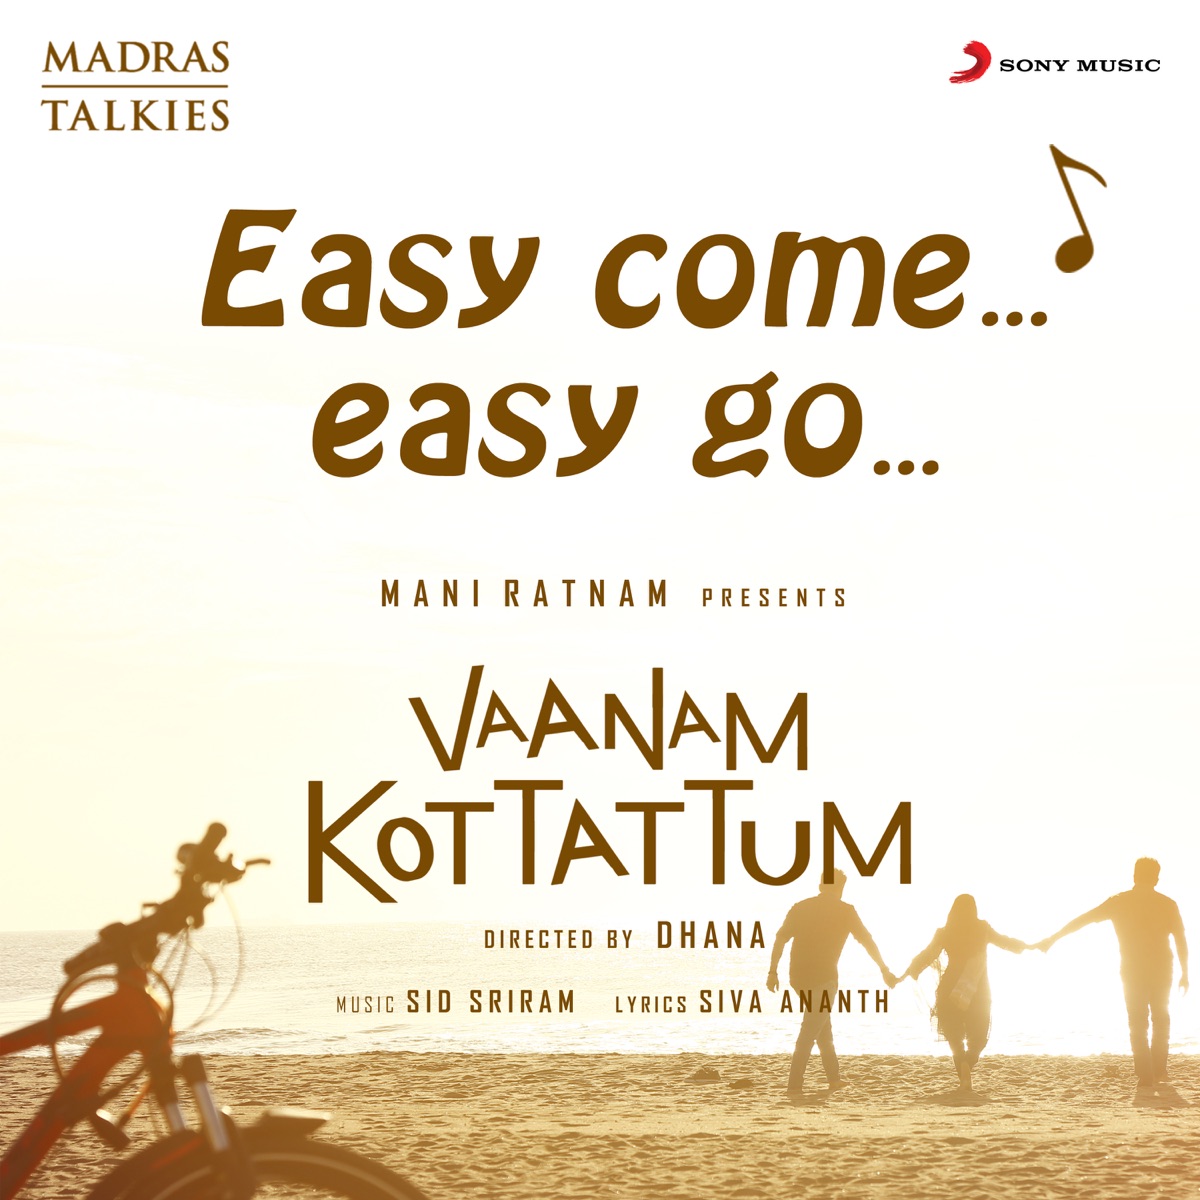 Easy Come Easy Go (From "Vaanam Kottattum") - Single - Album by Sid Sriram,  Sanjeev T, MADM & Tapass Naresh - Apple Music